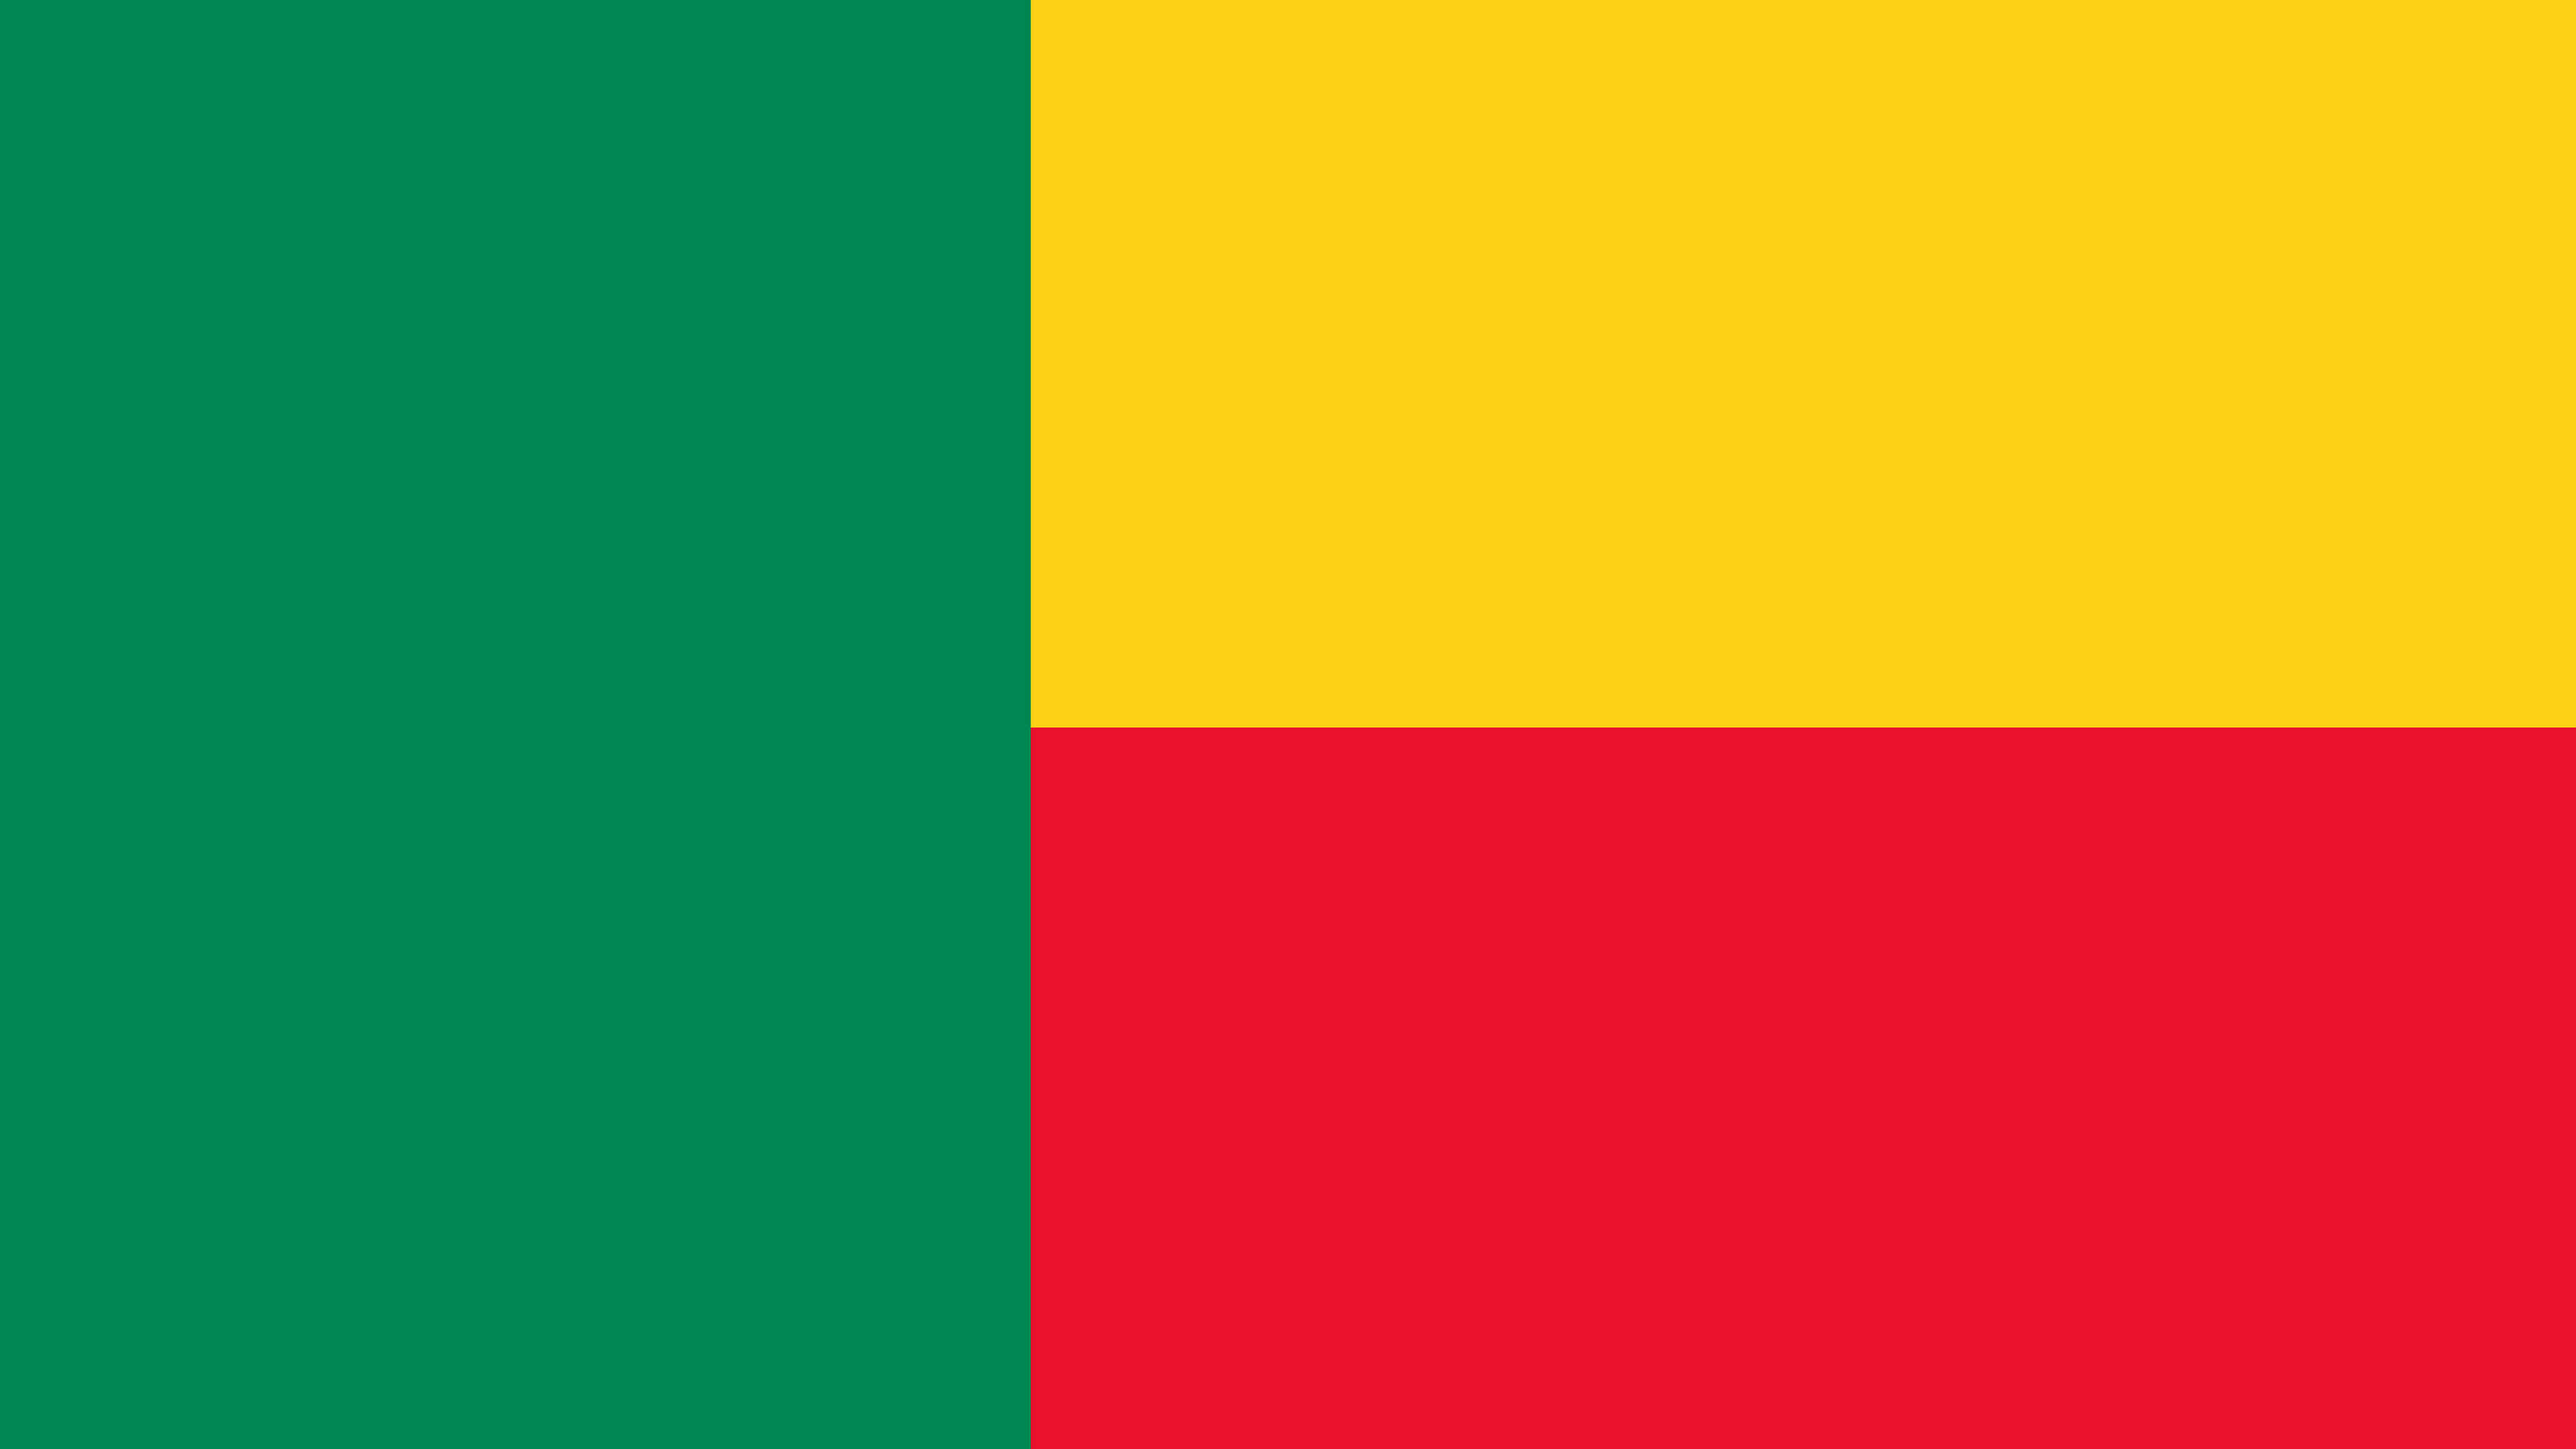 Benin, National flag wallpaper, UHD 4K quality, Patriotic pride, 3840x2160 4K Desktop